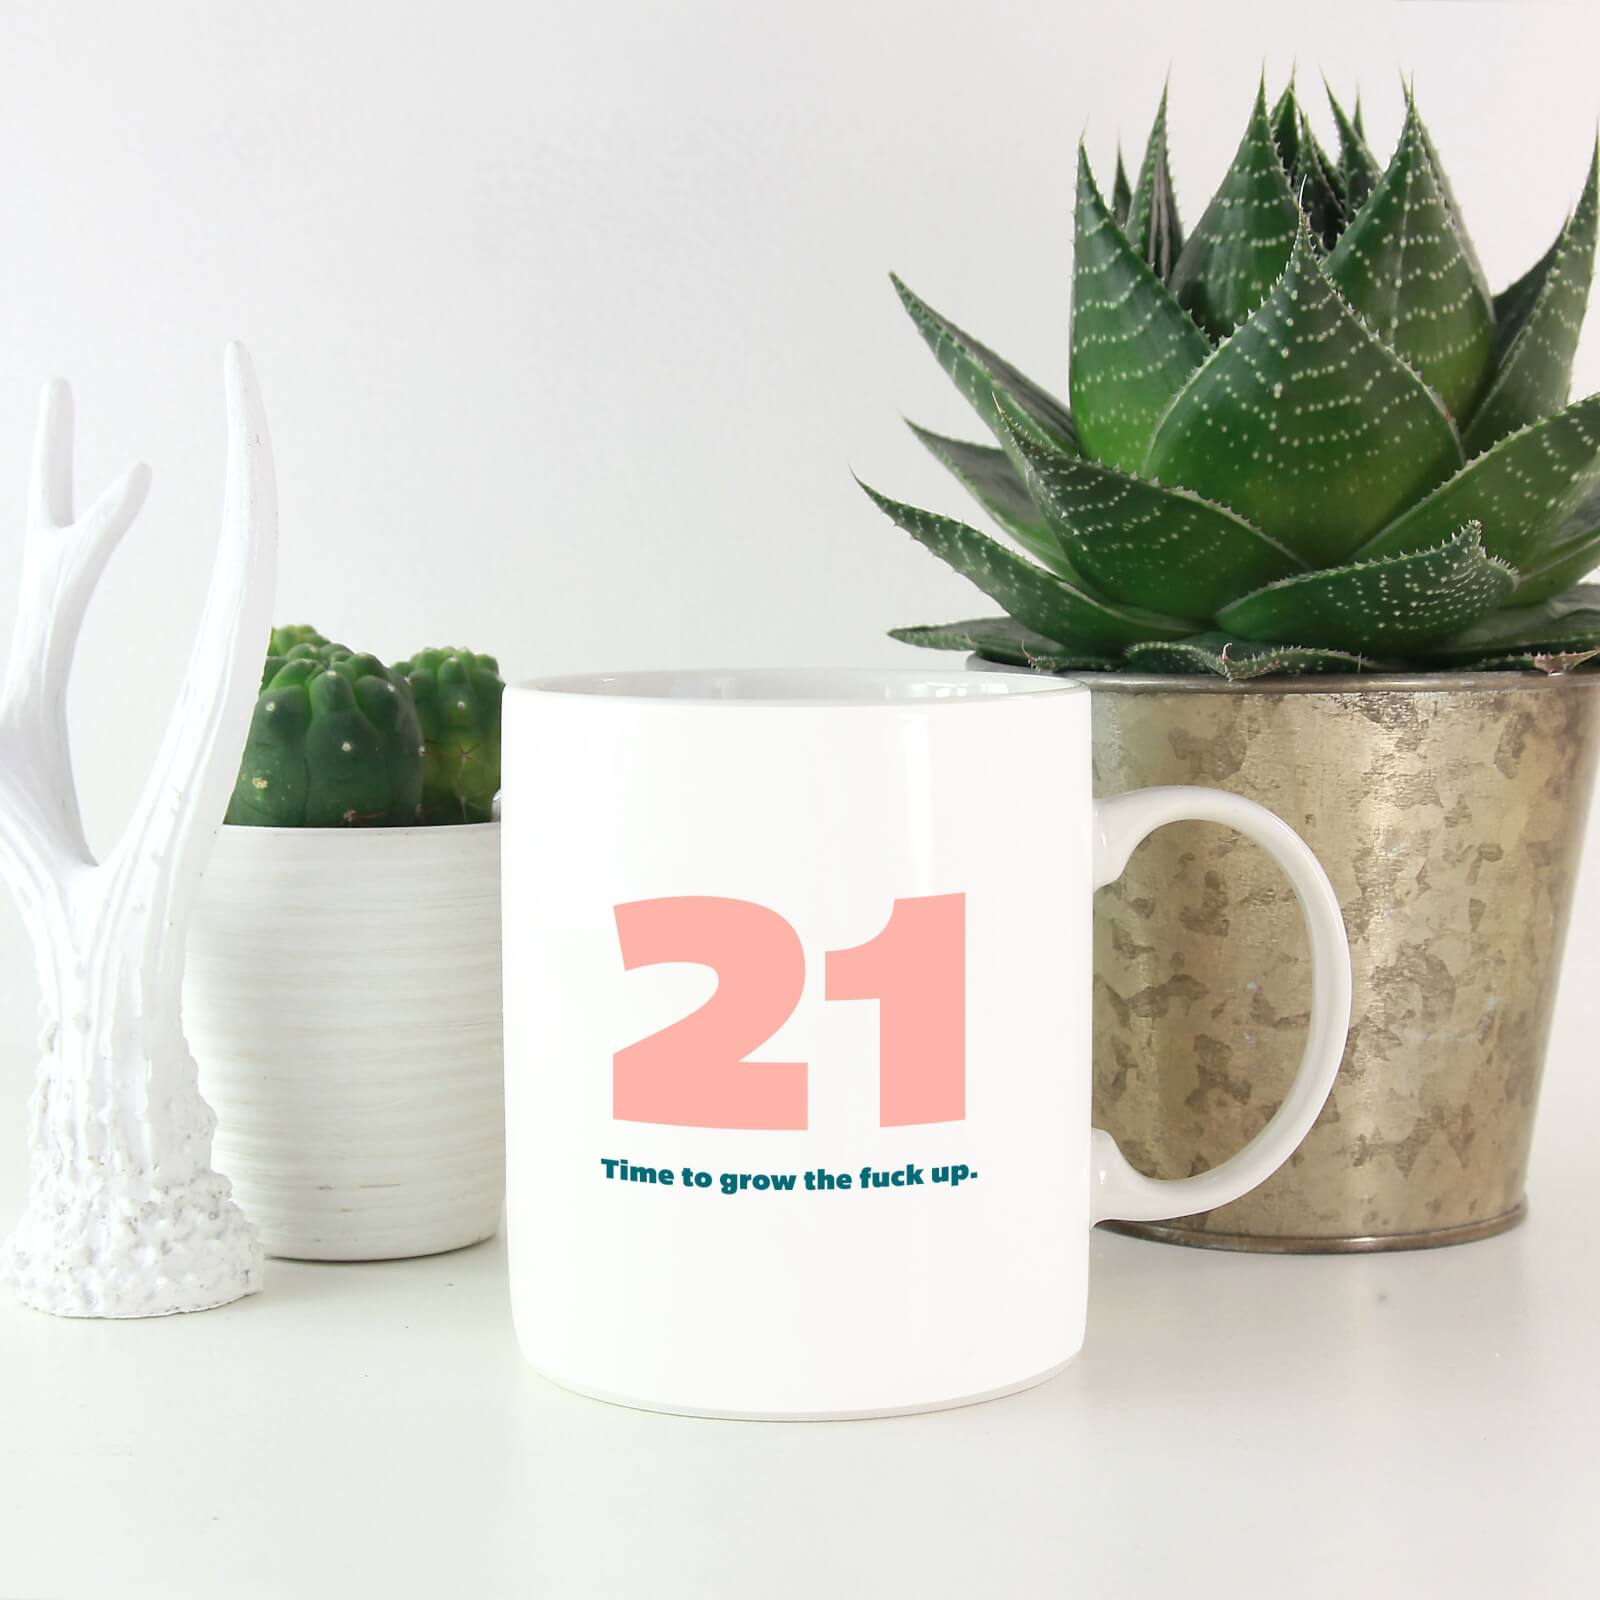 21 Time To Grow The Fuck Up. Mug